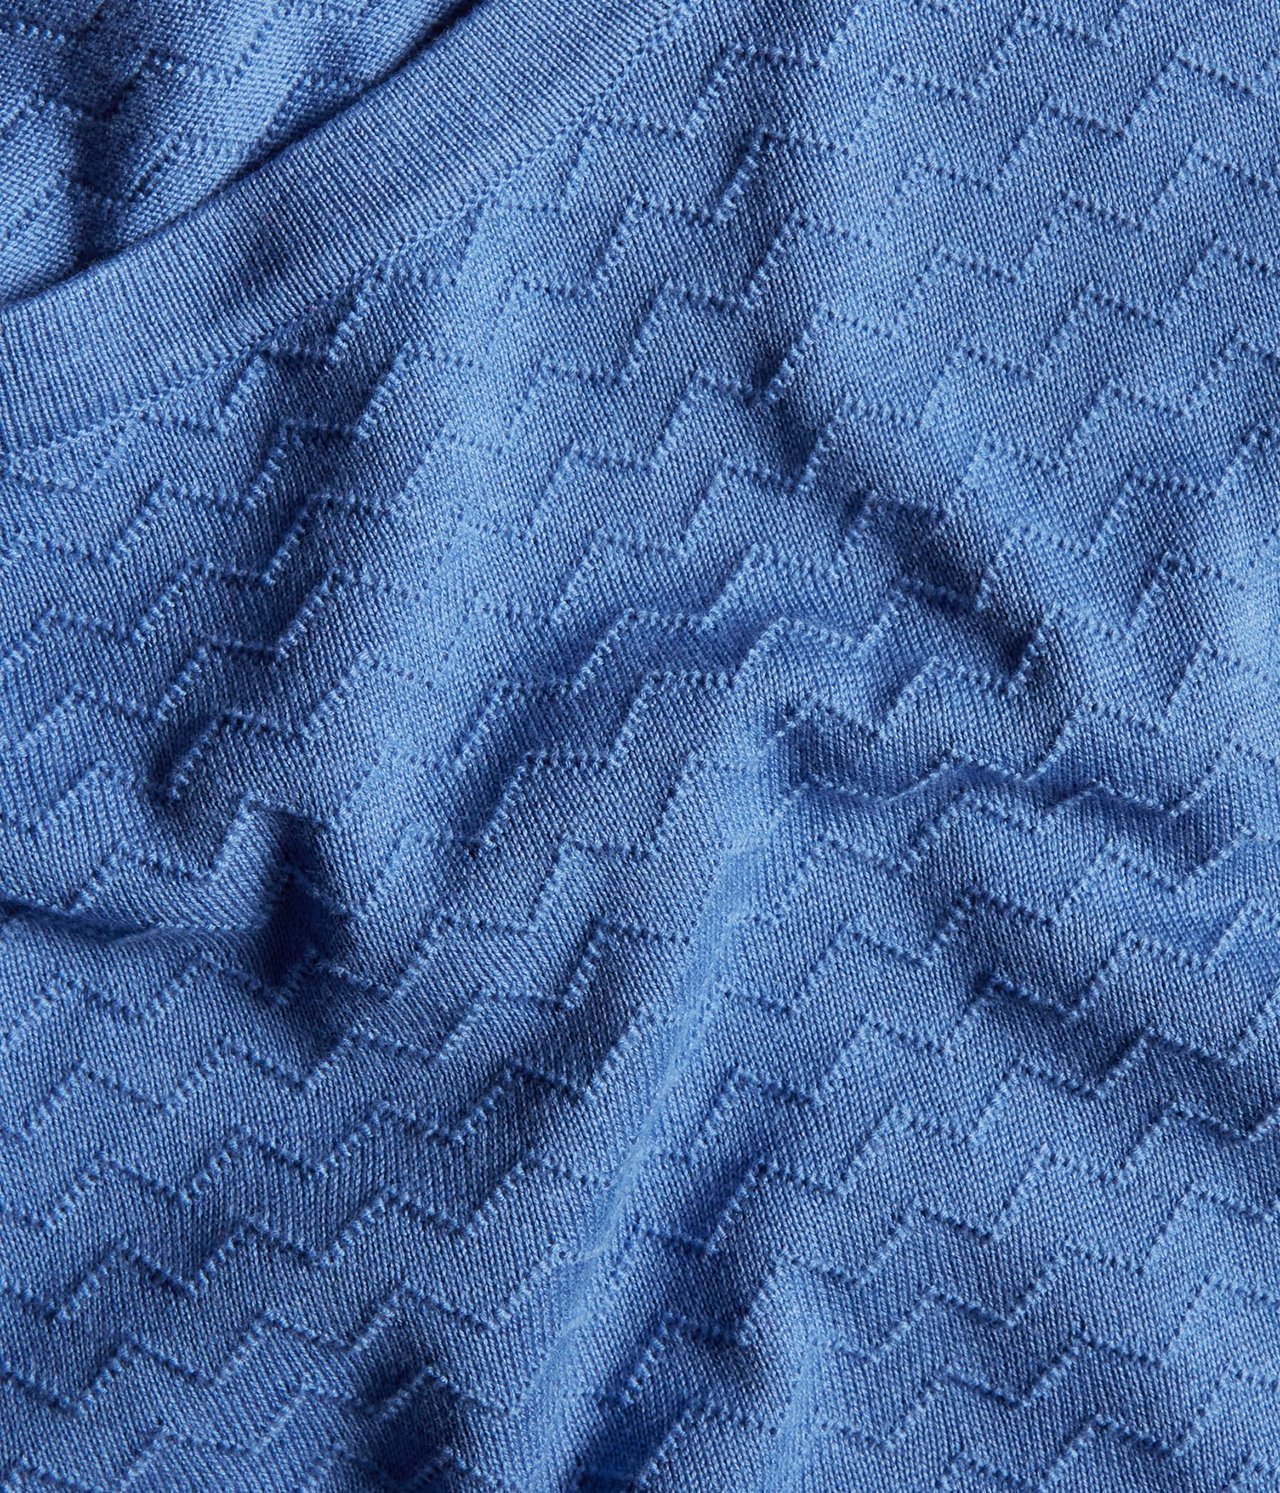 Mönsterstickad tröja Blå - null - 4